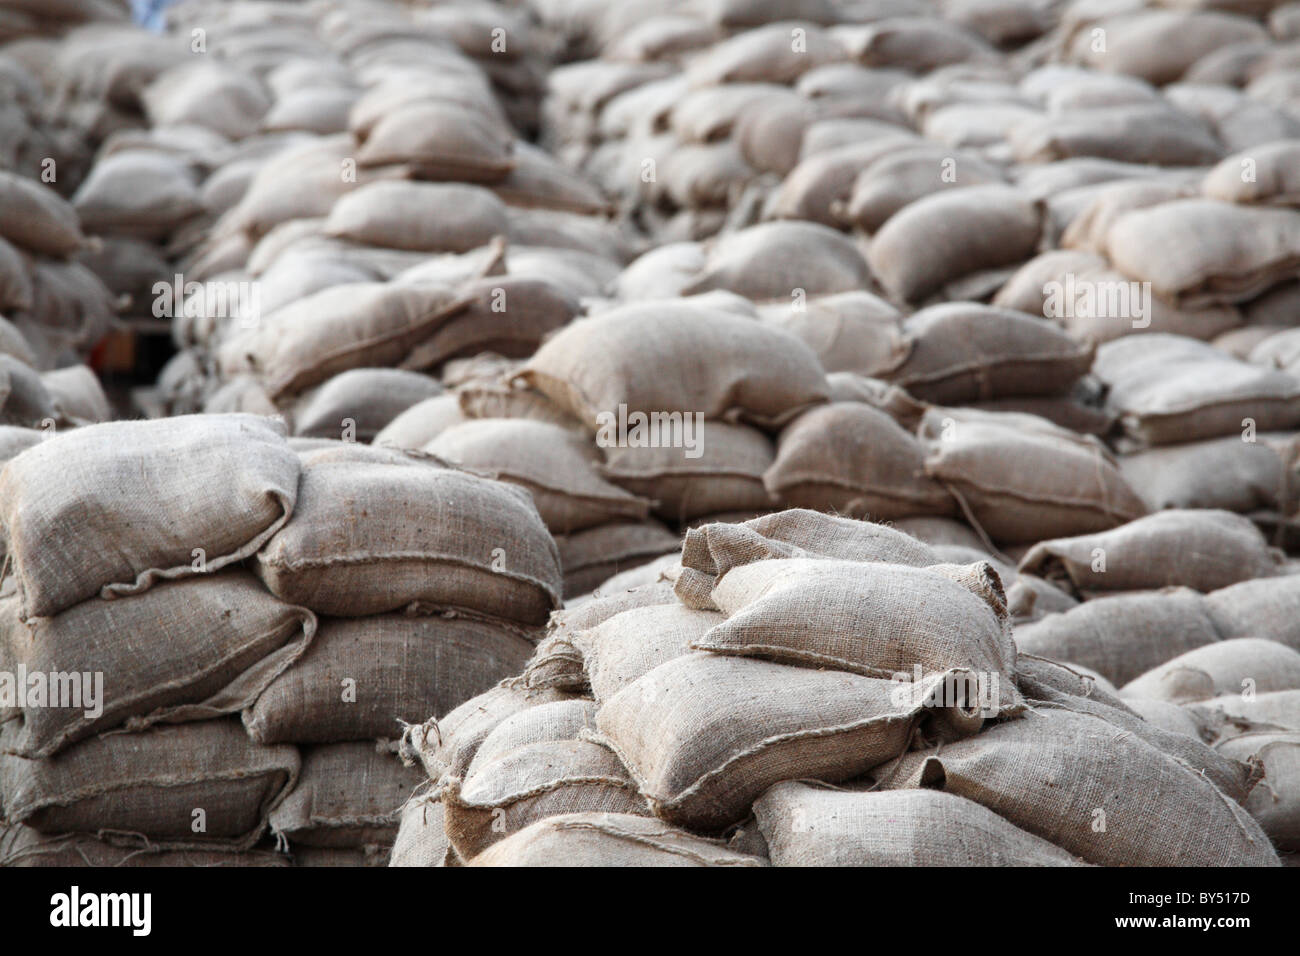 sandbags for flood prevention Stock Photo